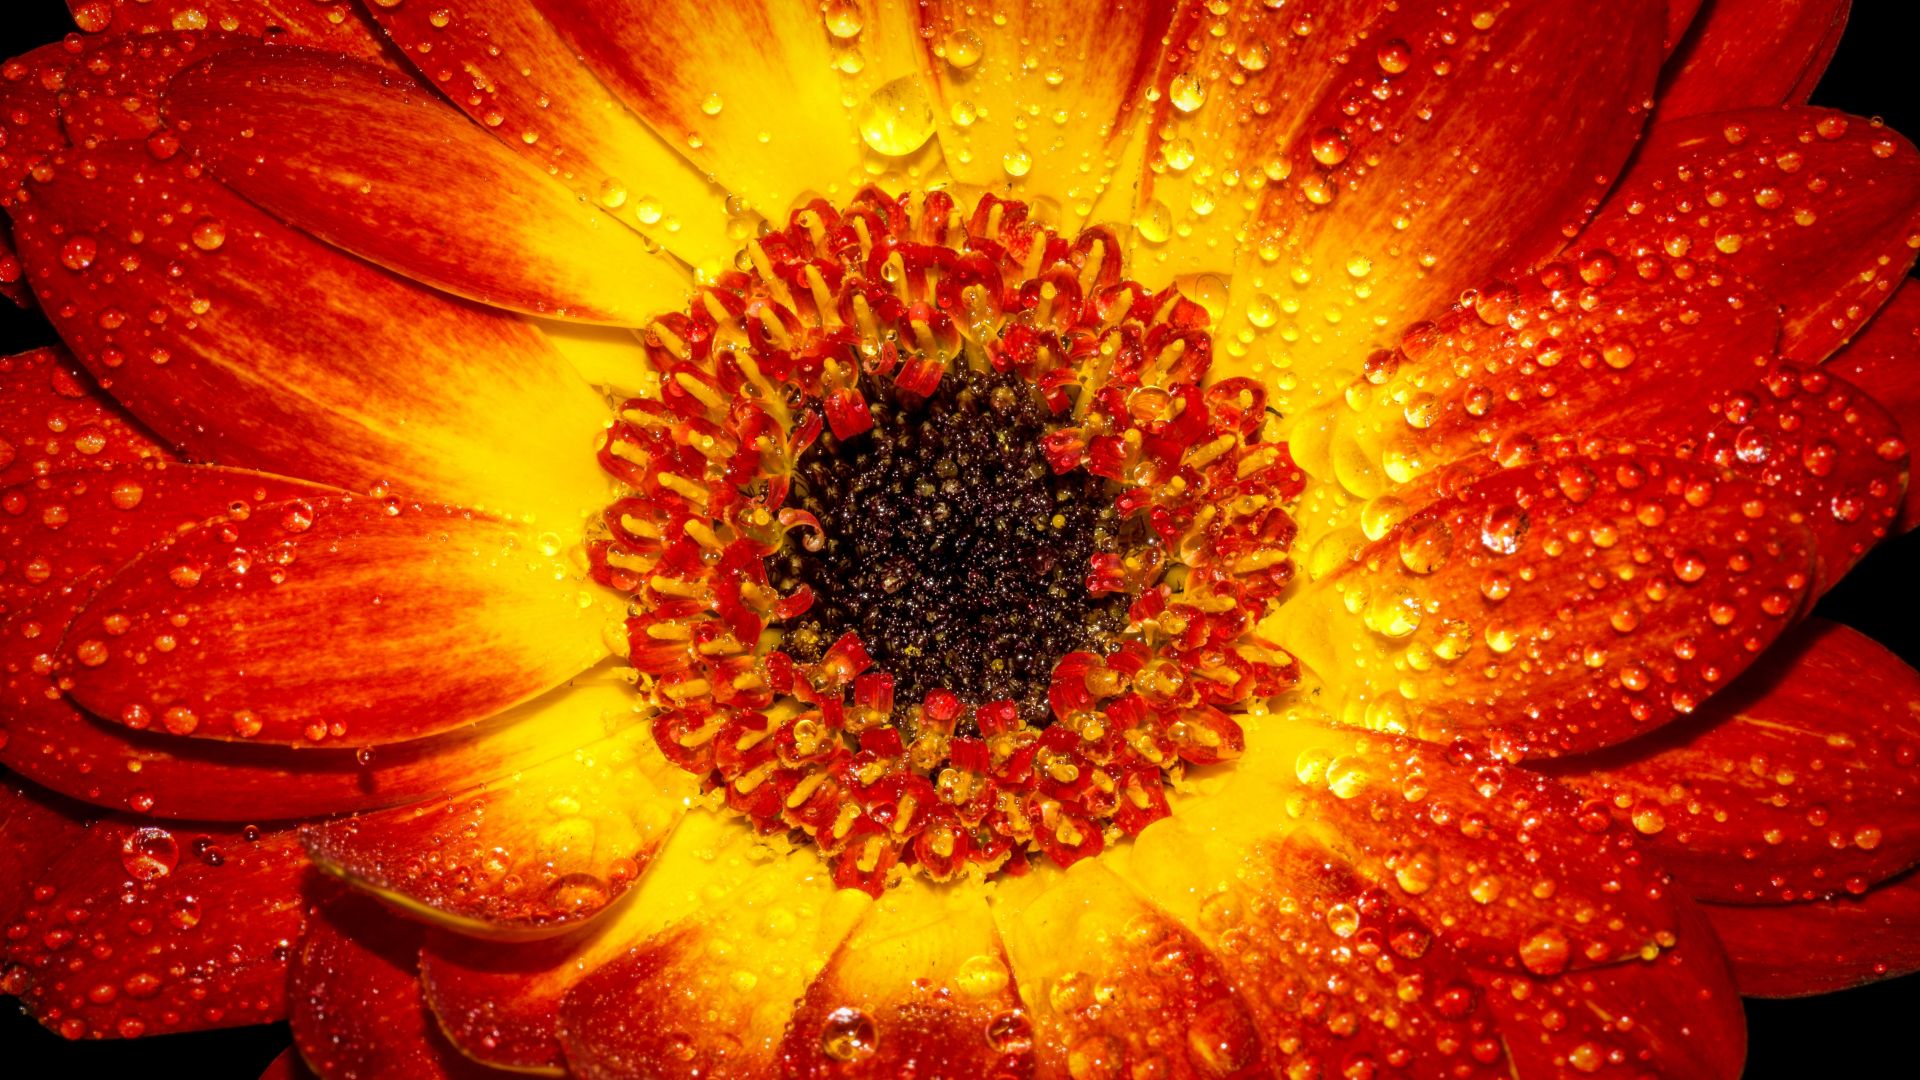 Wallpaper Flower petal drop orange